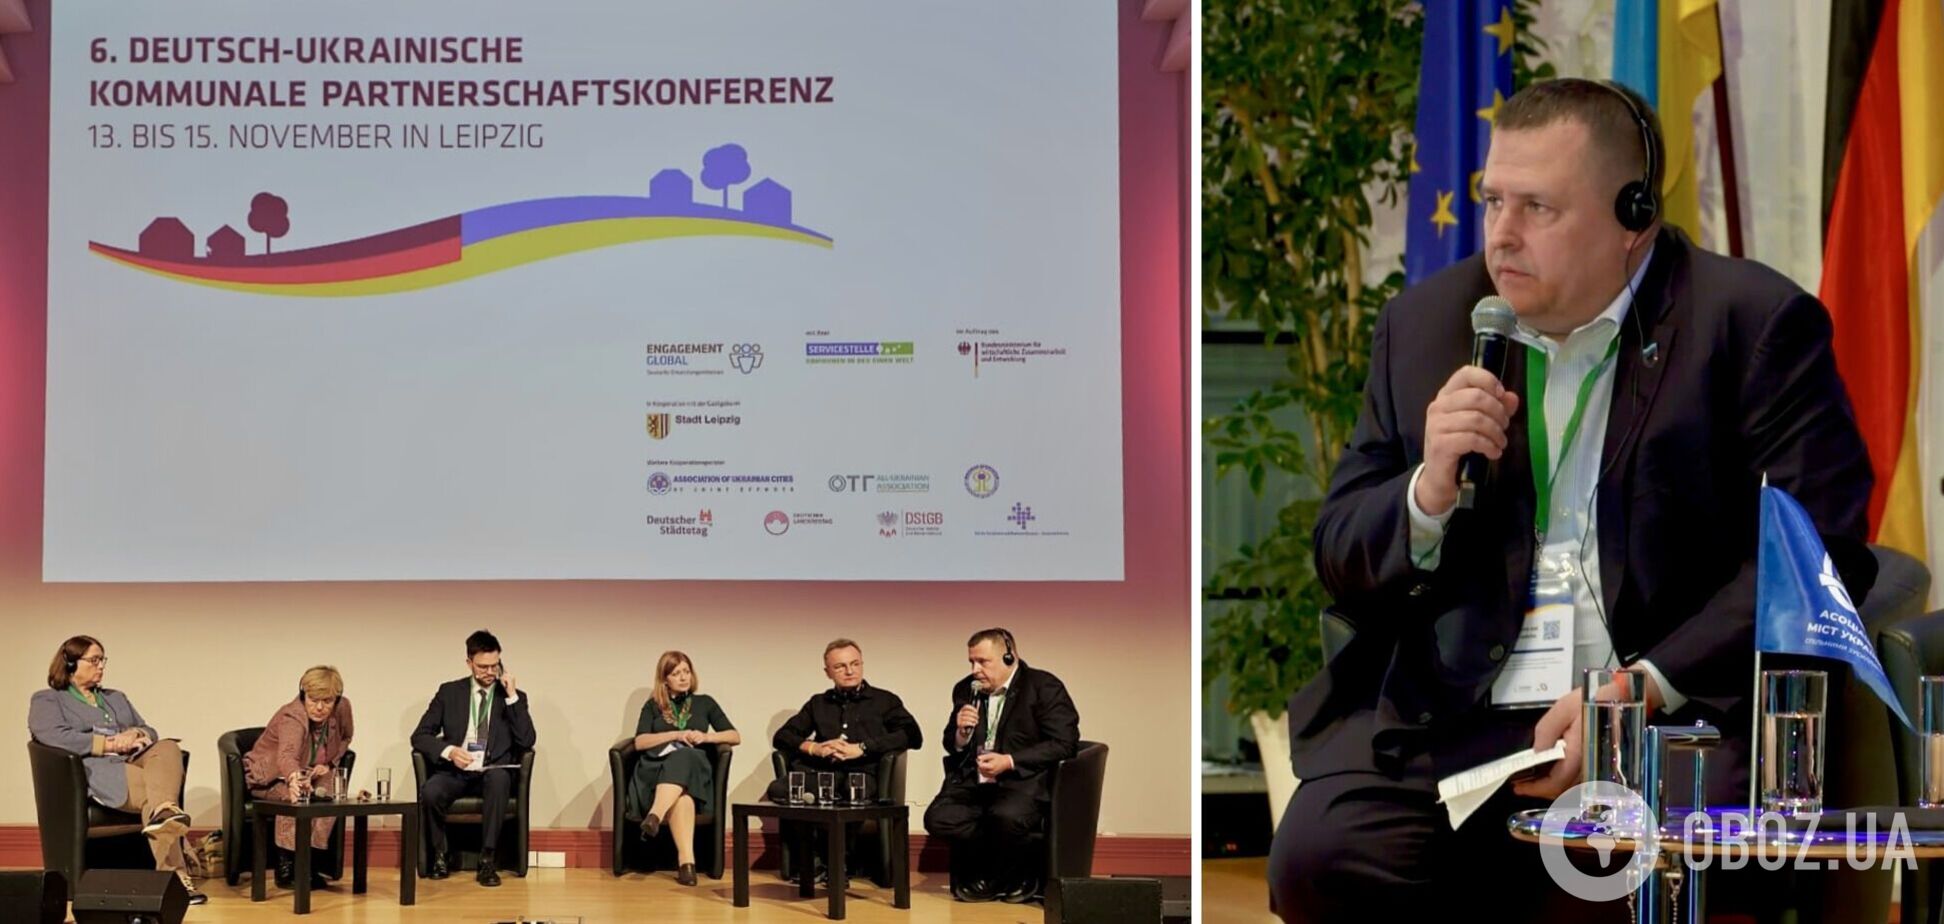 Ресурсы, техника и эмпатия: Филатов на конференции в Лейпциге сказал, в чем больше всего нуждаются украинцы